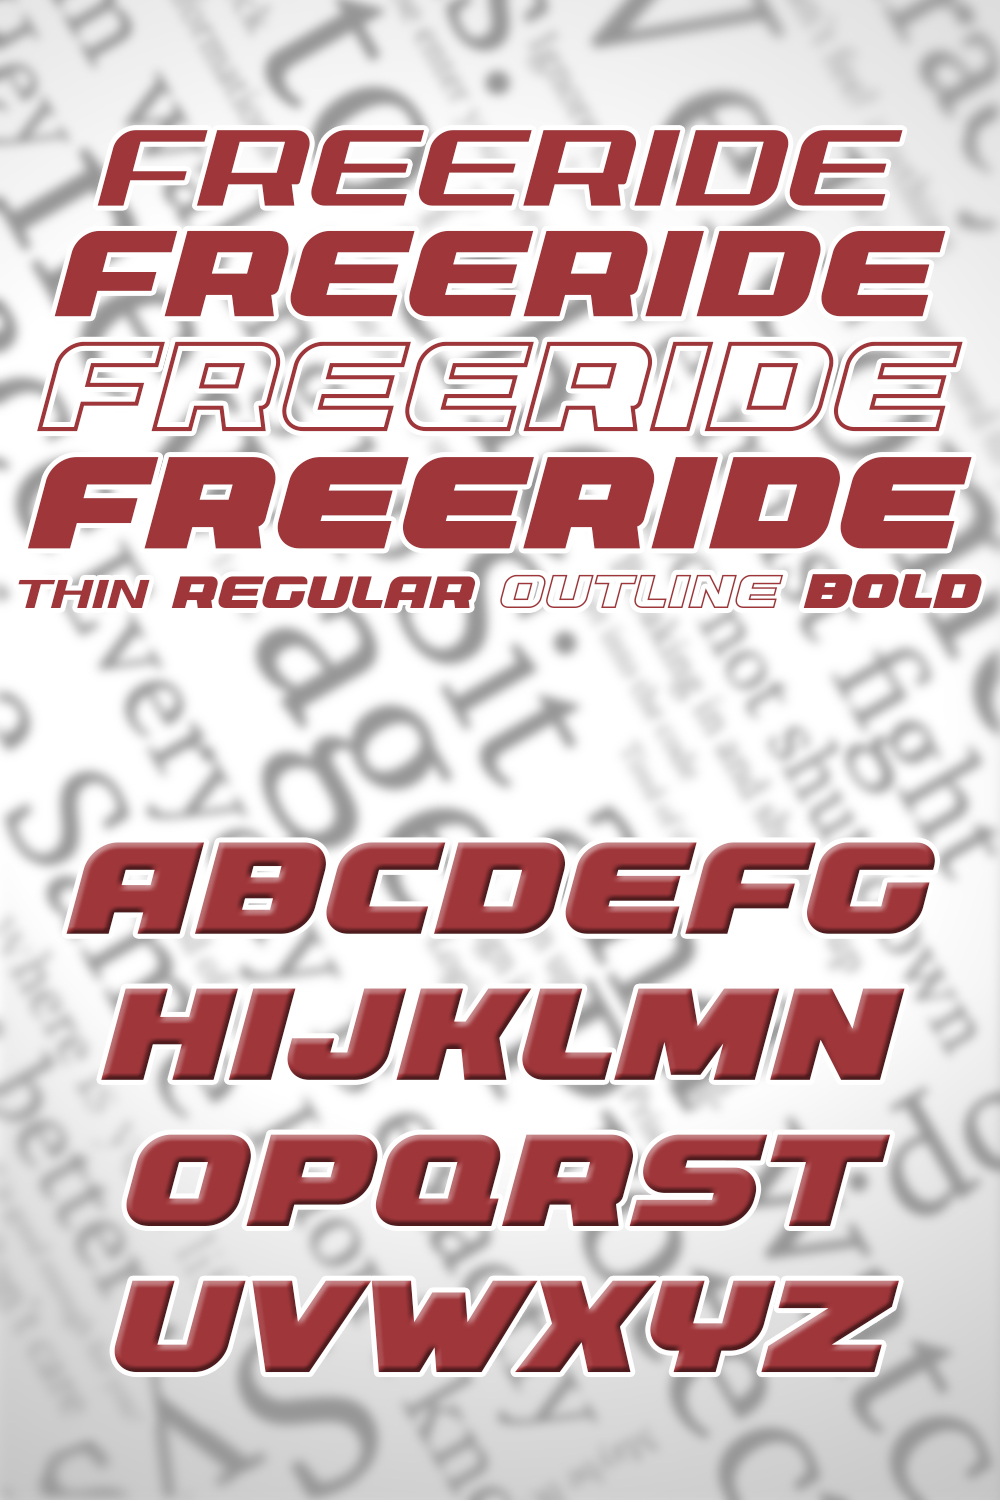 Freeride font of pinterest.